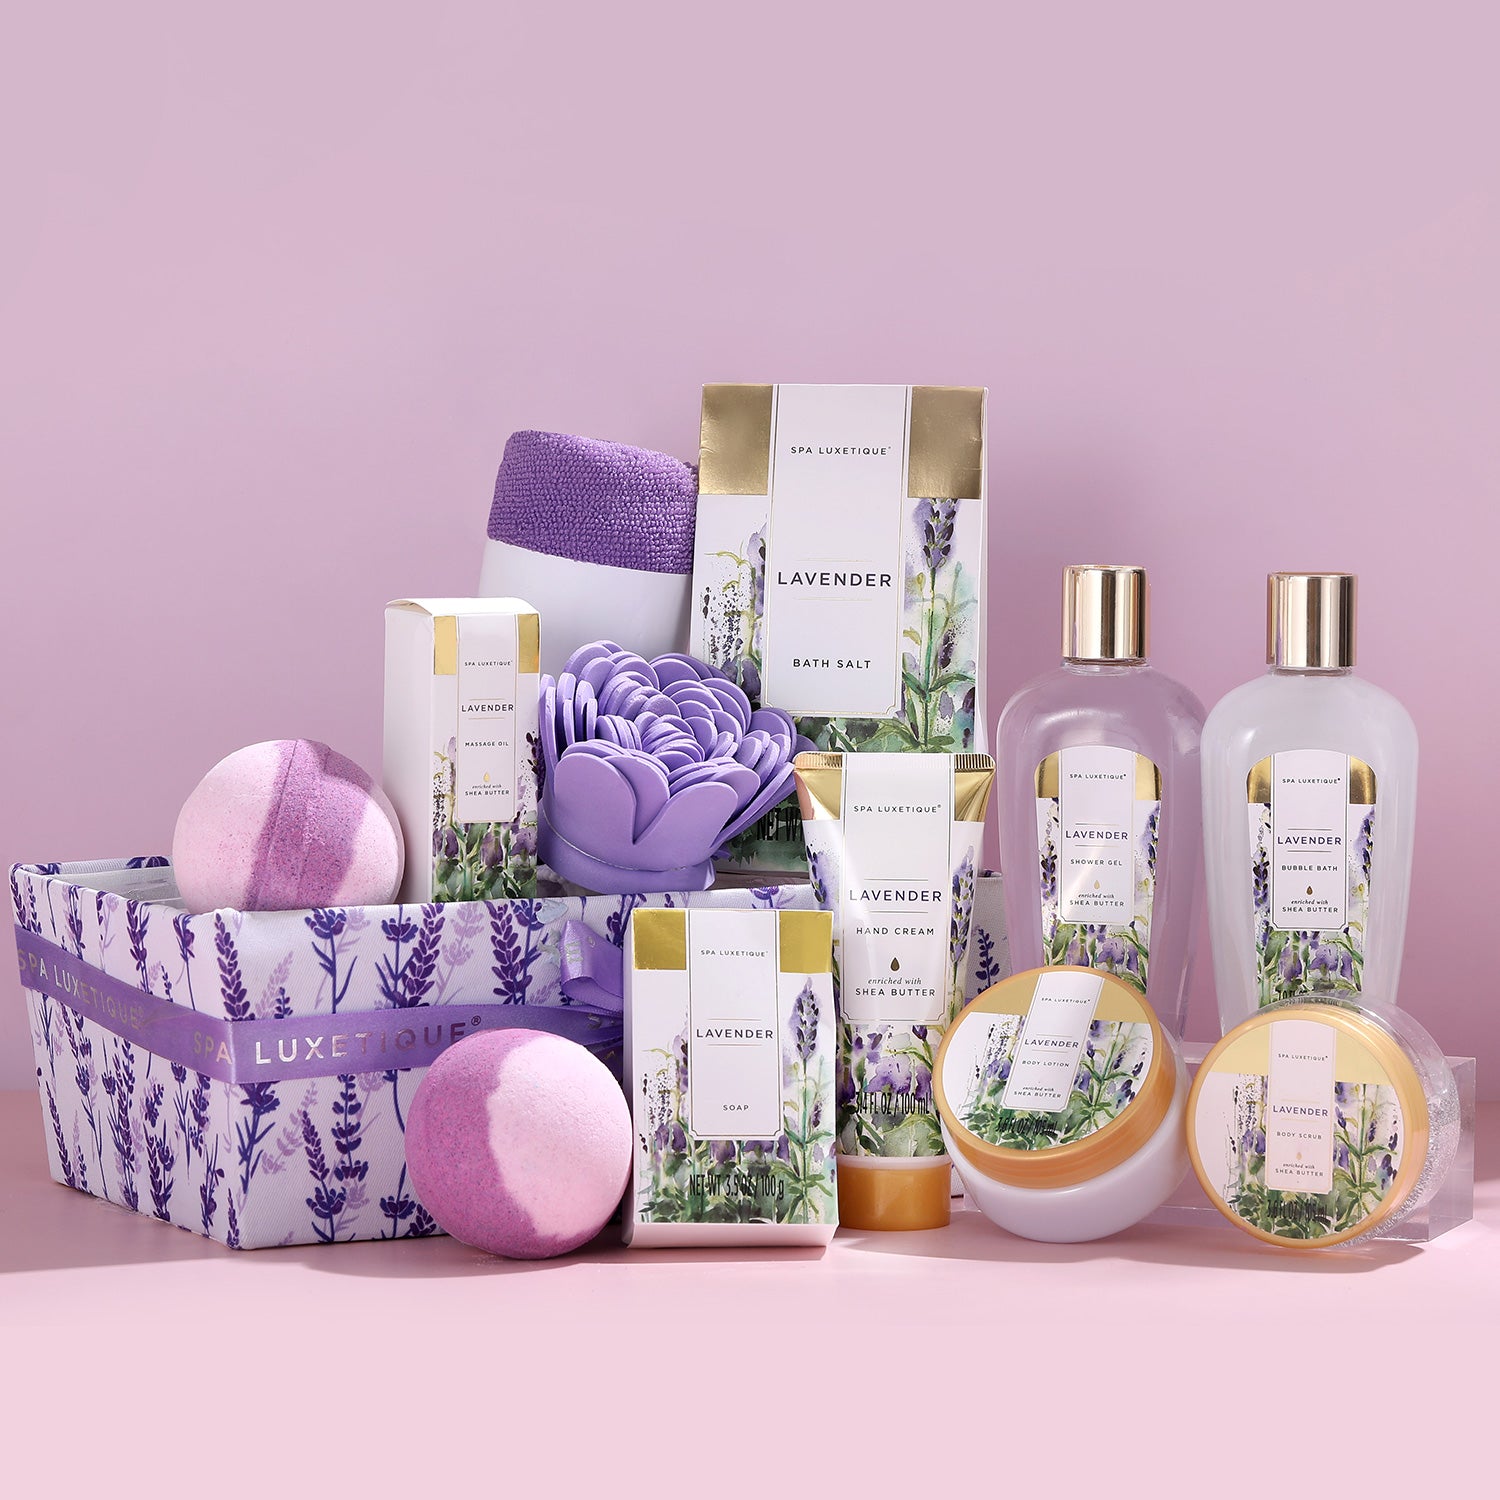 https://bodyandearth.shop/cdn/shop/products/spa-luxetique-gift-sets-lavender-bath-shower-gift-basket-38306299117782.jpg?v=1675248192&width=1500